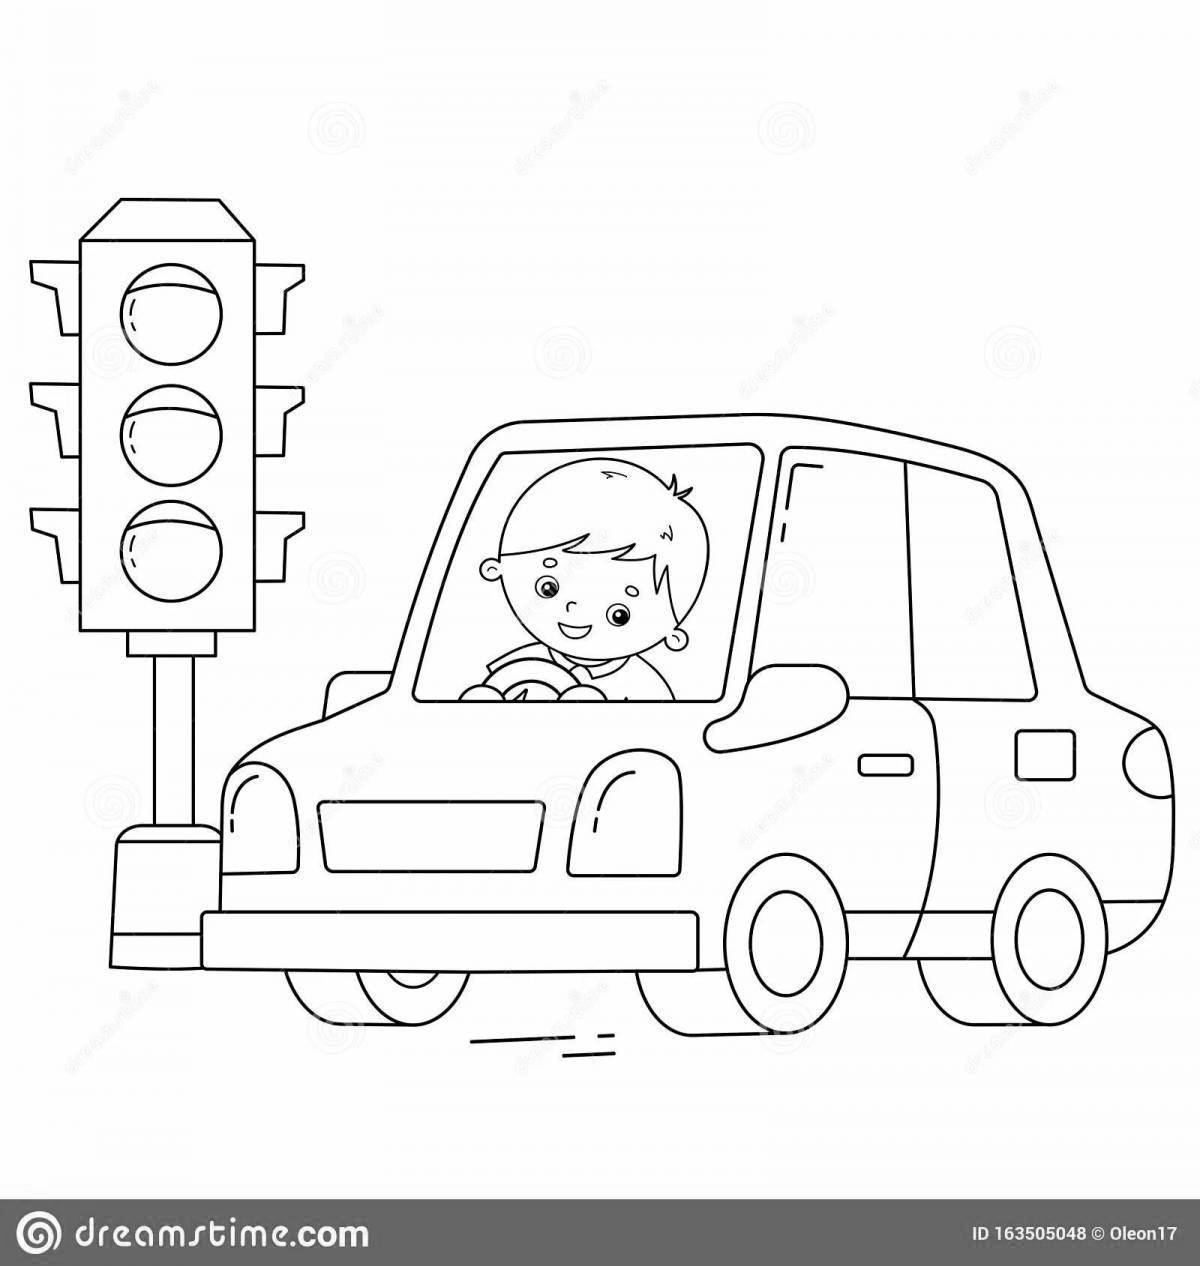 Раскраска машина и светофор для детей